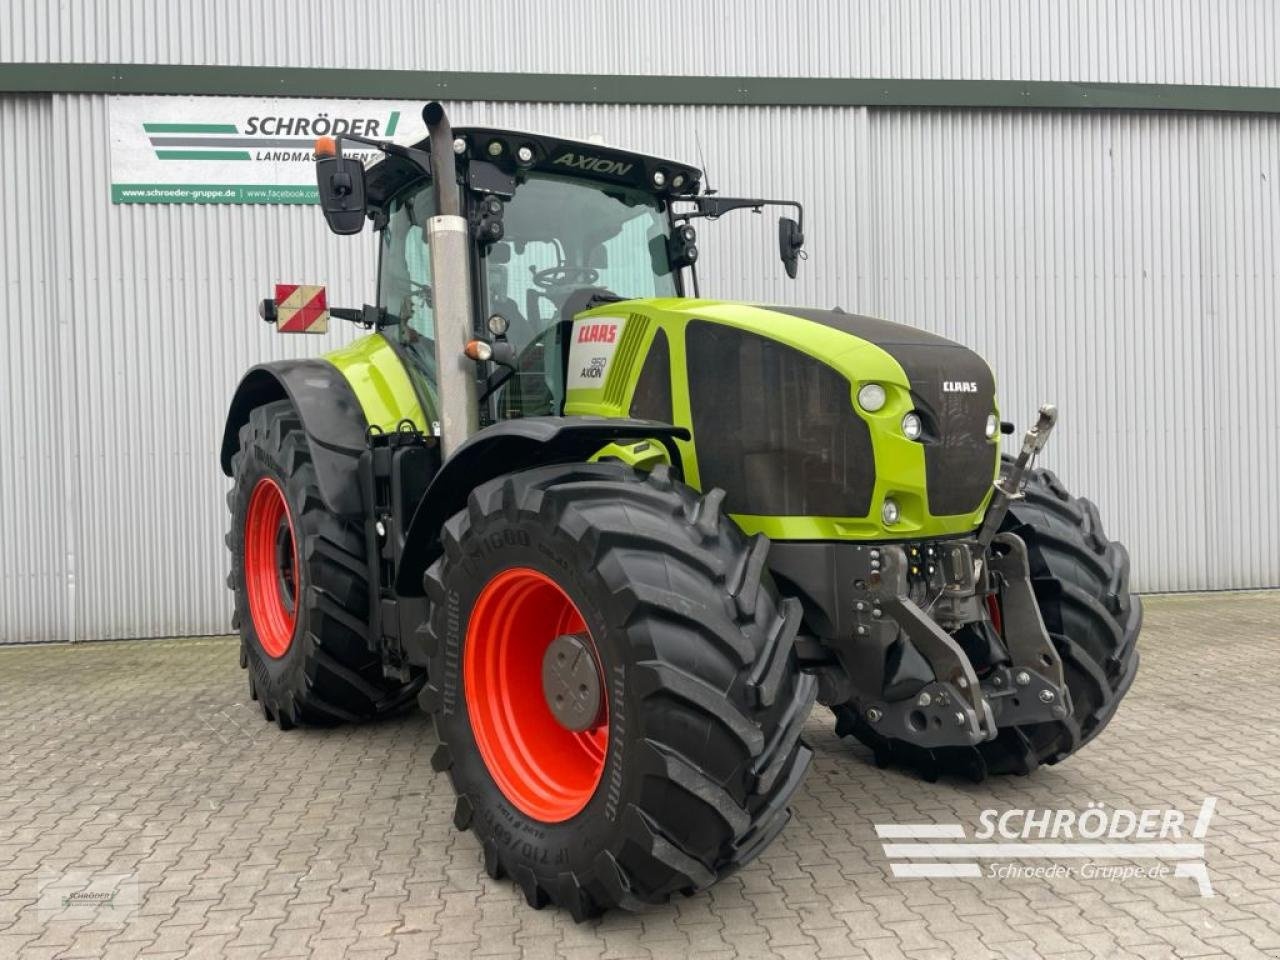 Claas Axion 950 tractor €99,850